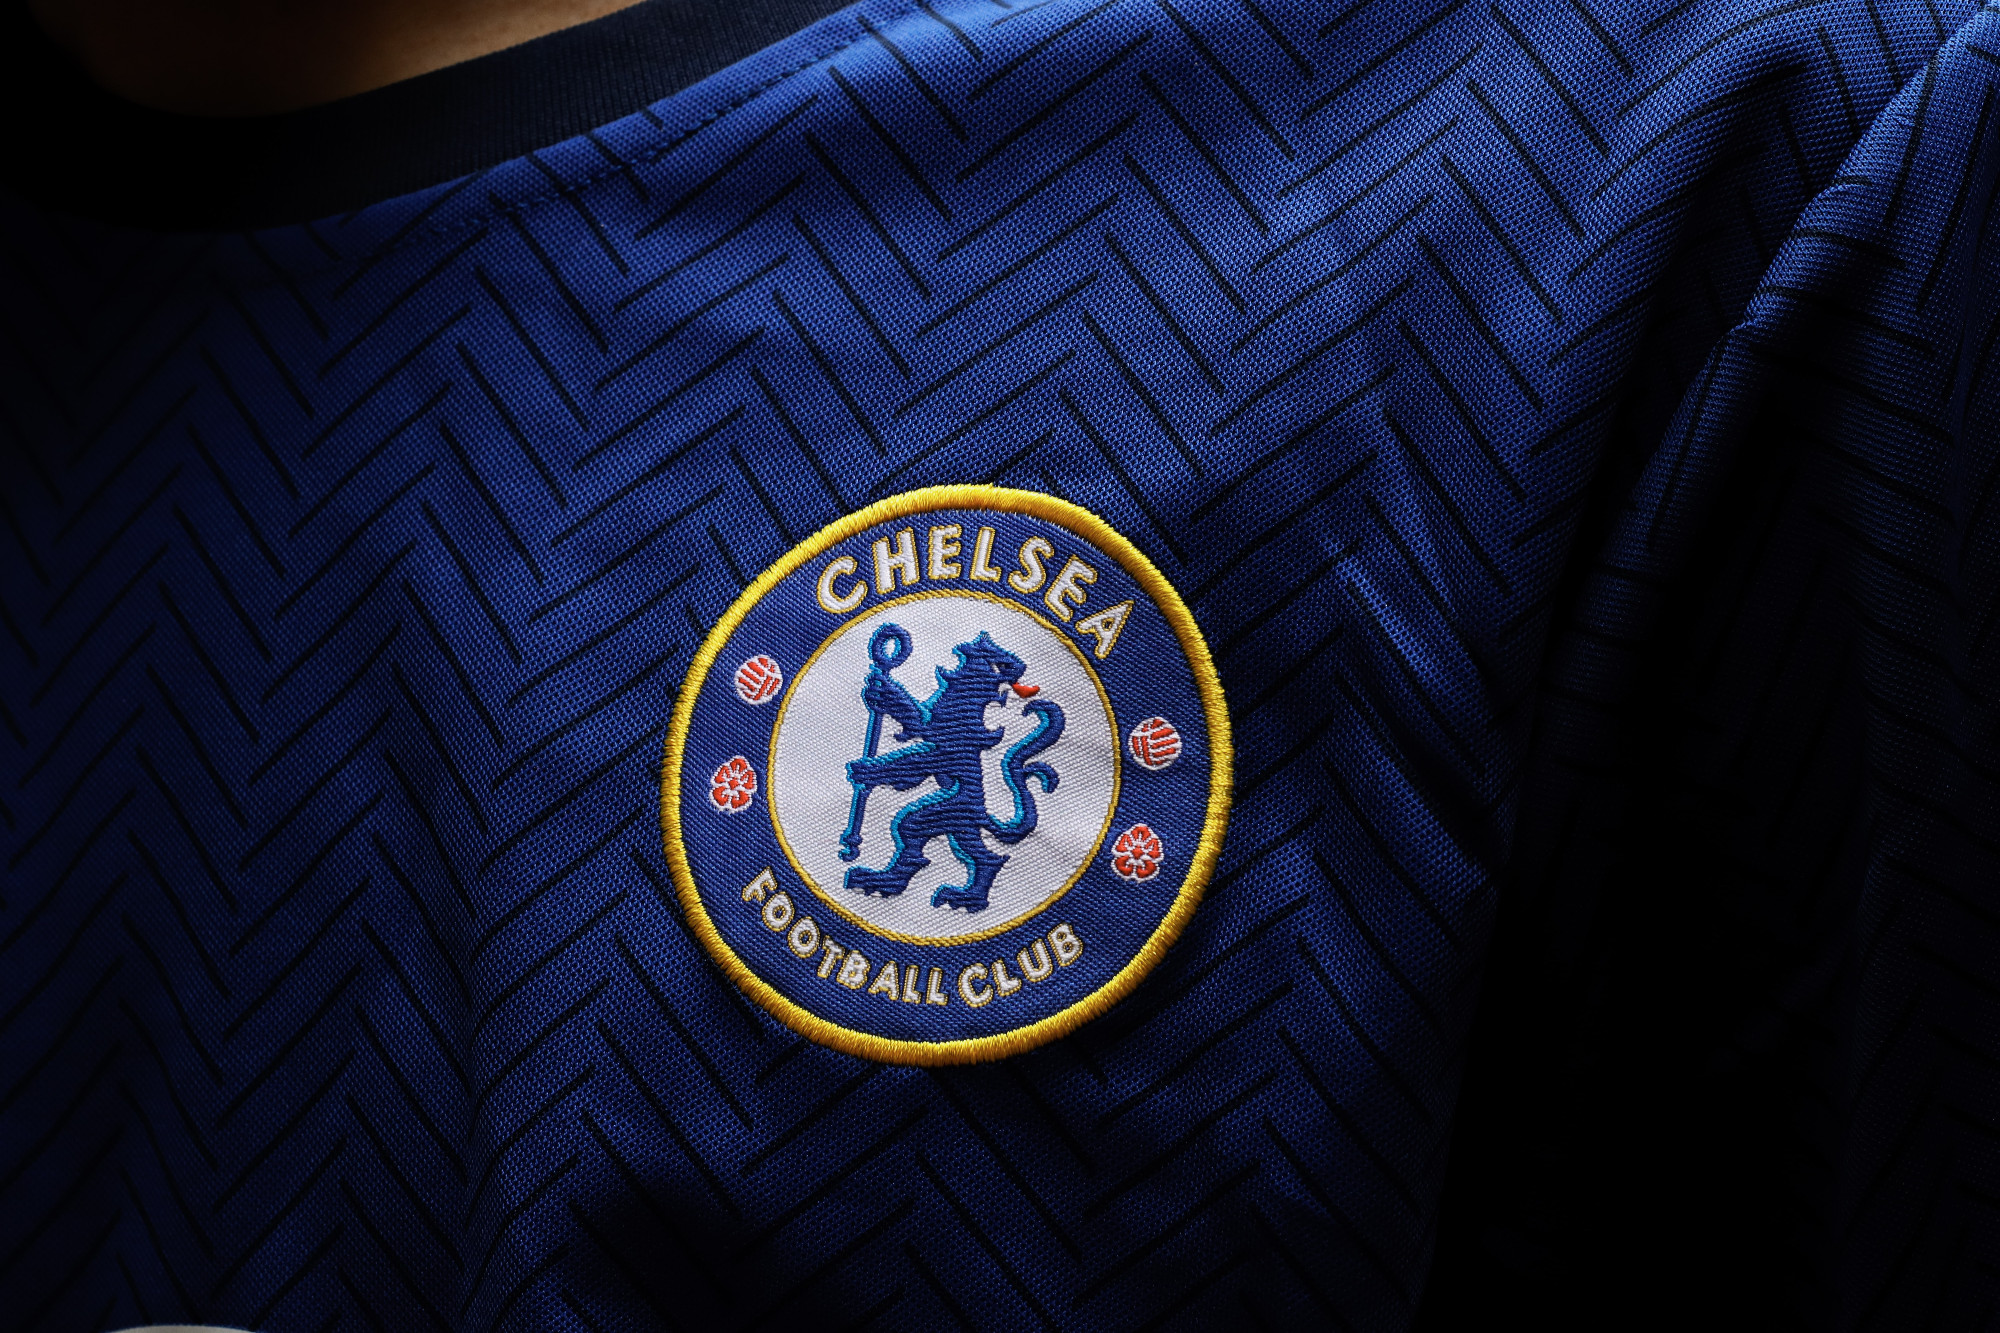 A Premier League megfosztotta Abramovicsot a Chelsea klubigazgatói posztjától